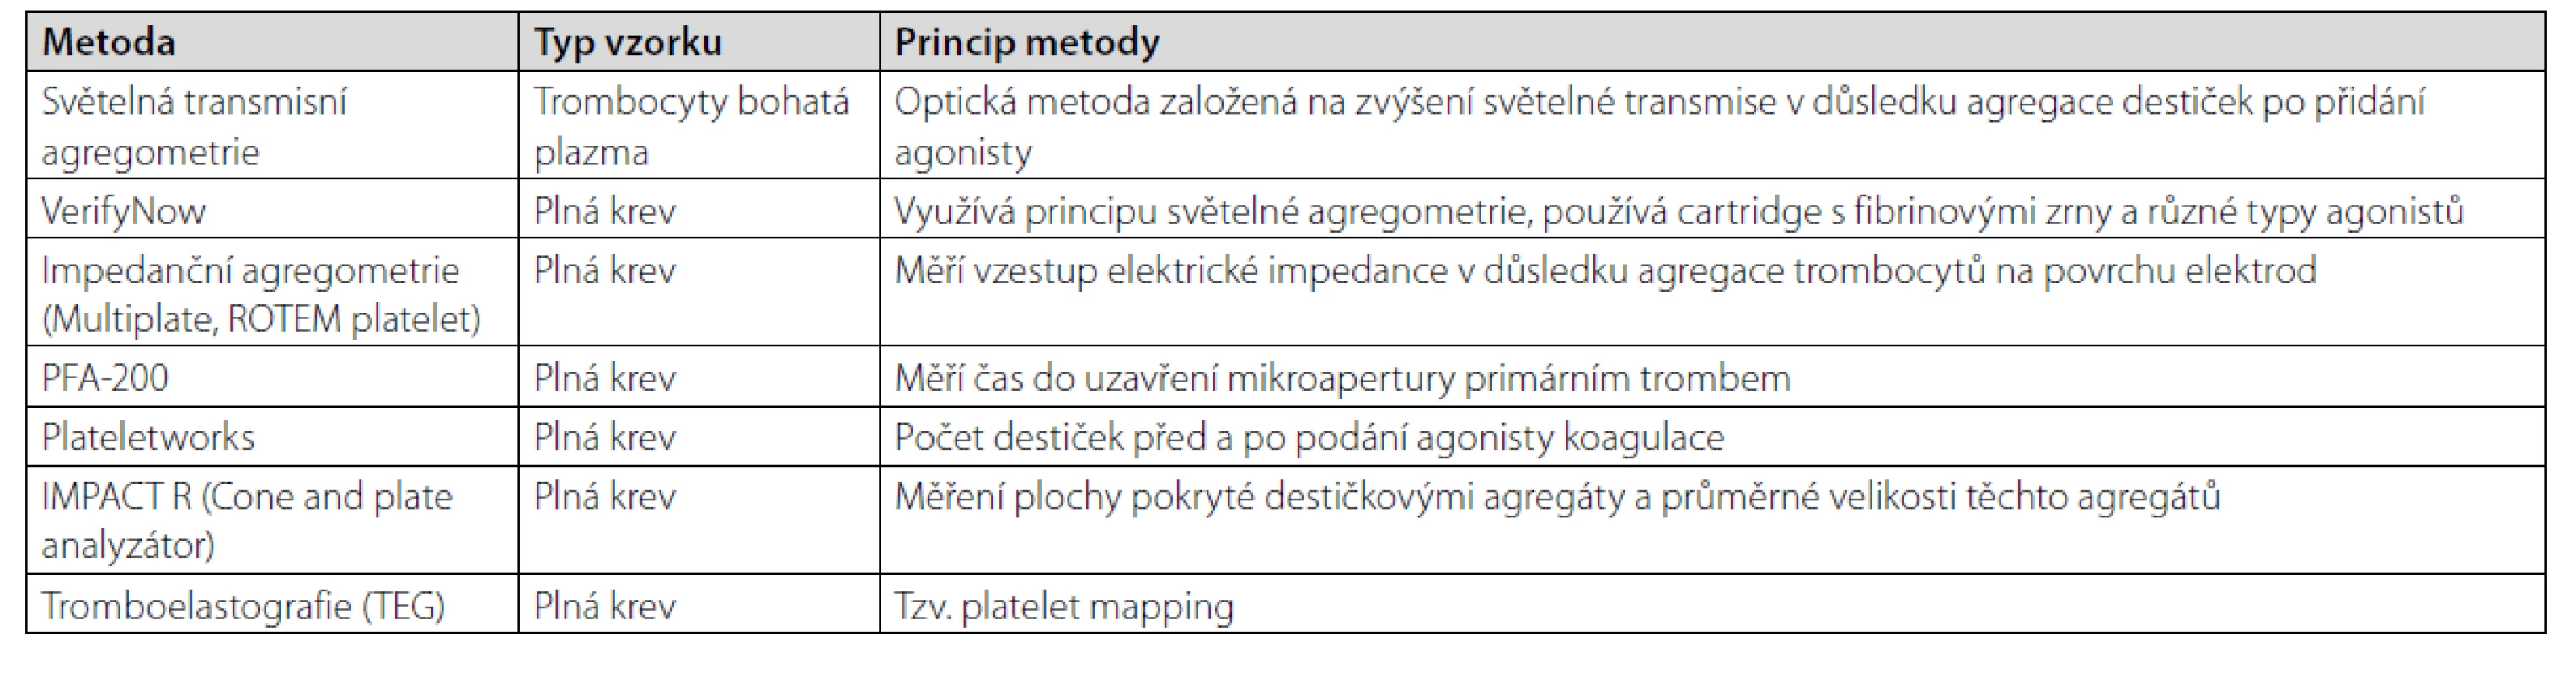 Metody funkčního vyšetření trombocytů